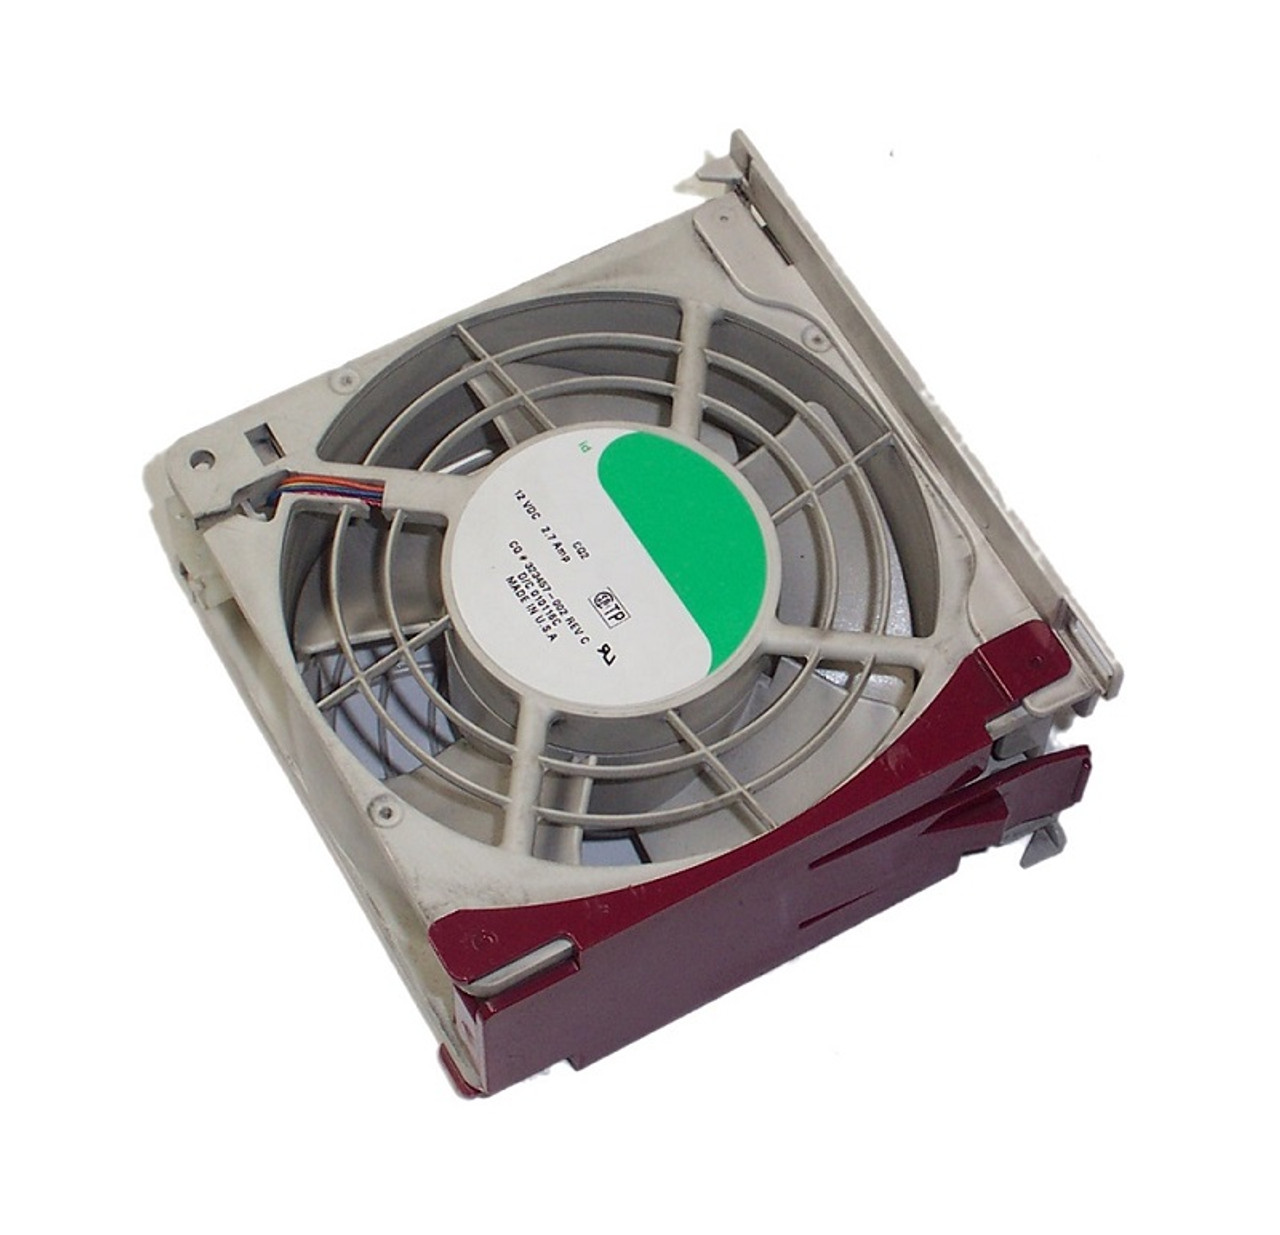 389537-001 - HP Cooling Fan Module for BLc7000 BLc3000